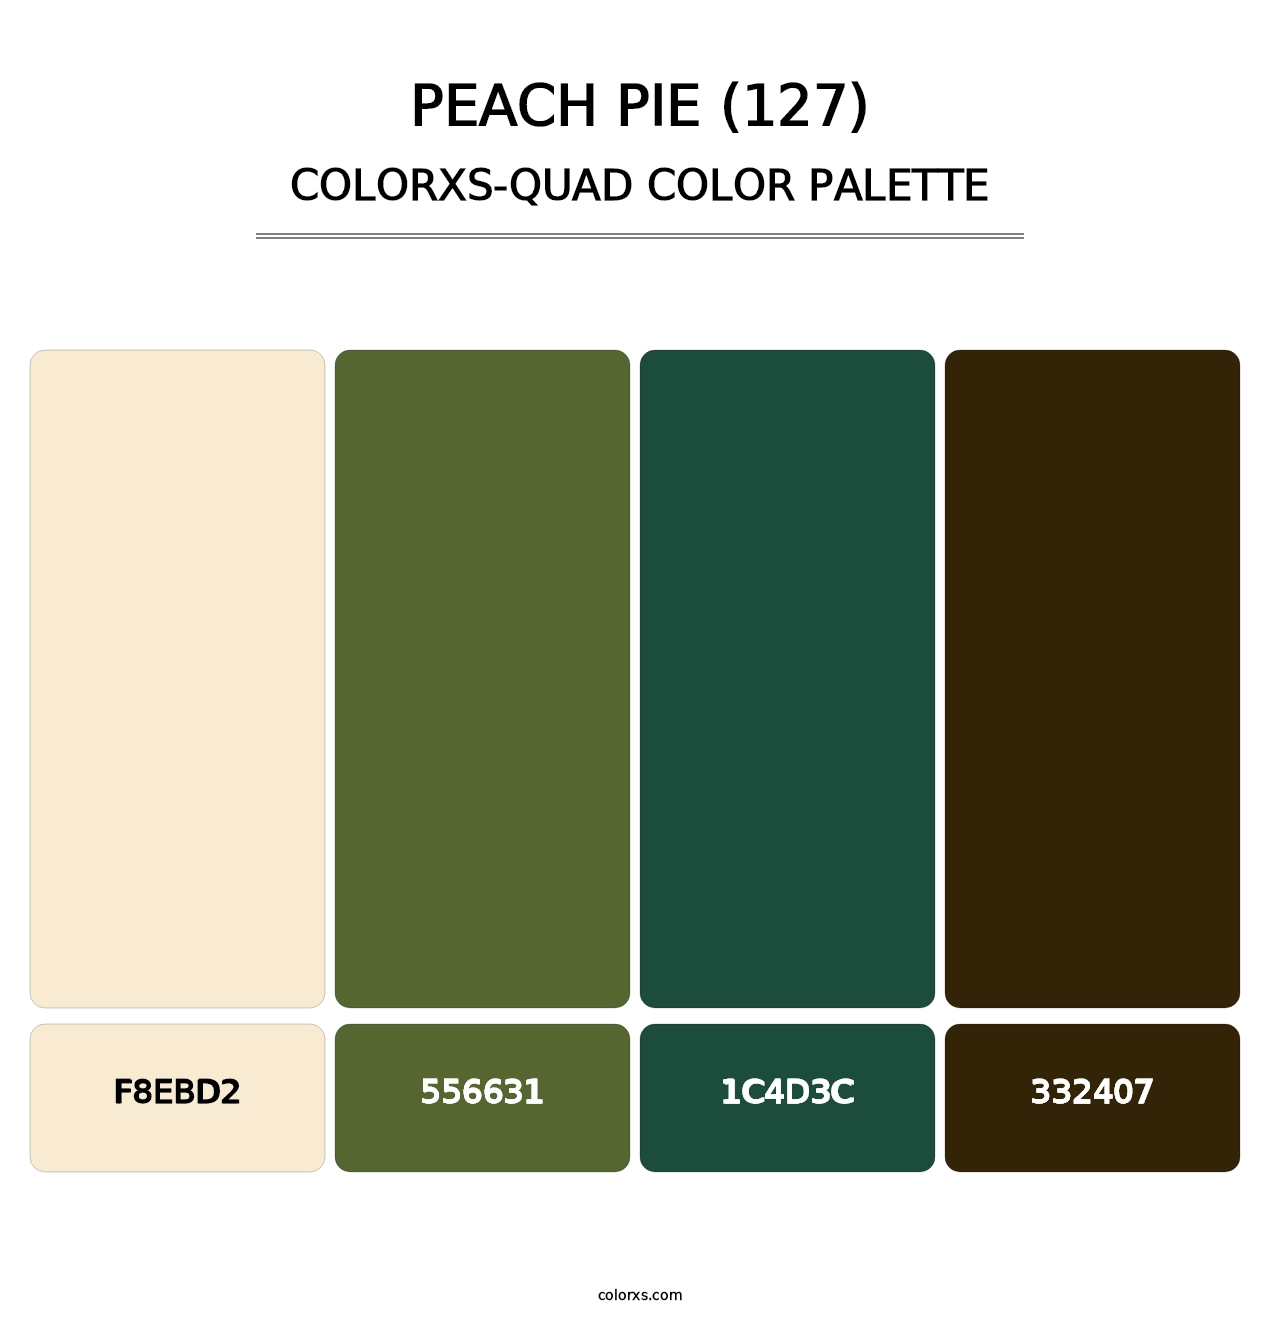 Peach Pie (127) - Colorxs Quad Palette